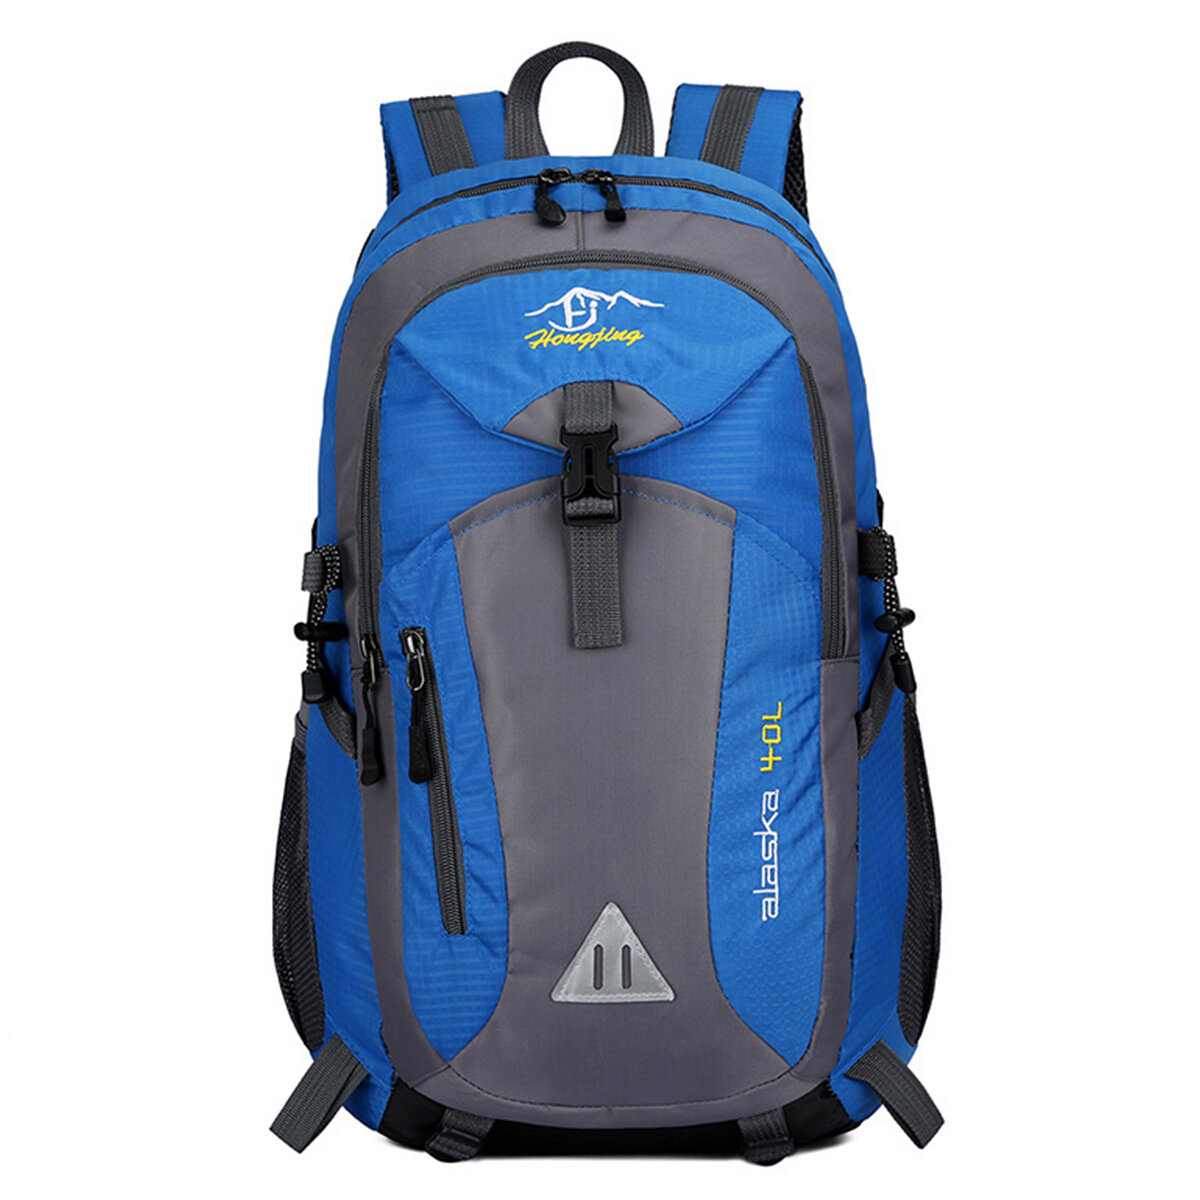 Mochila de escalada impermeable de 40L, mochila deportiva para viajes al aire libre, senderismo y viajes de hombro.